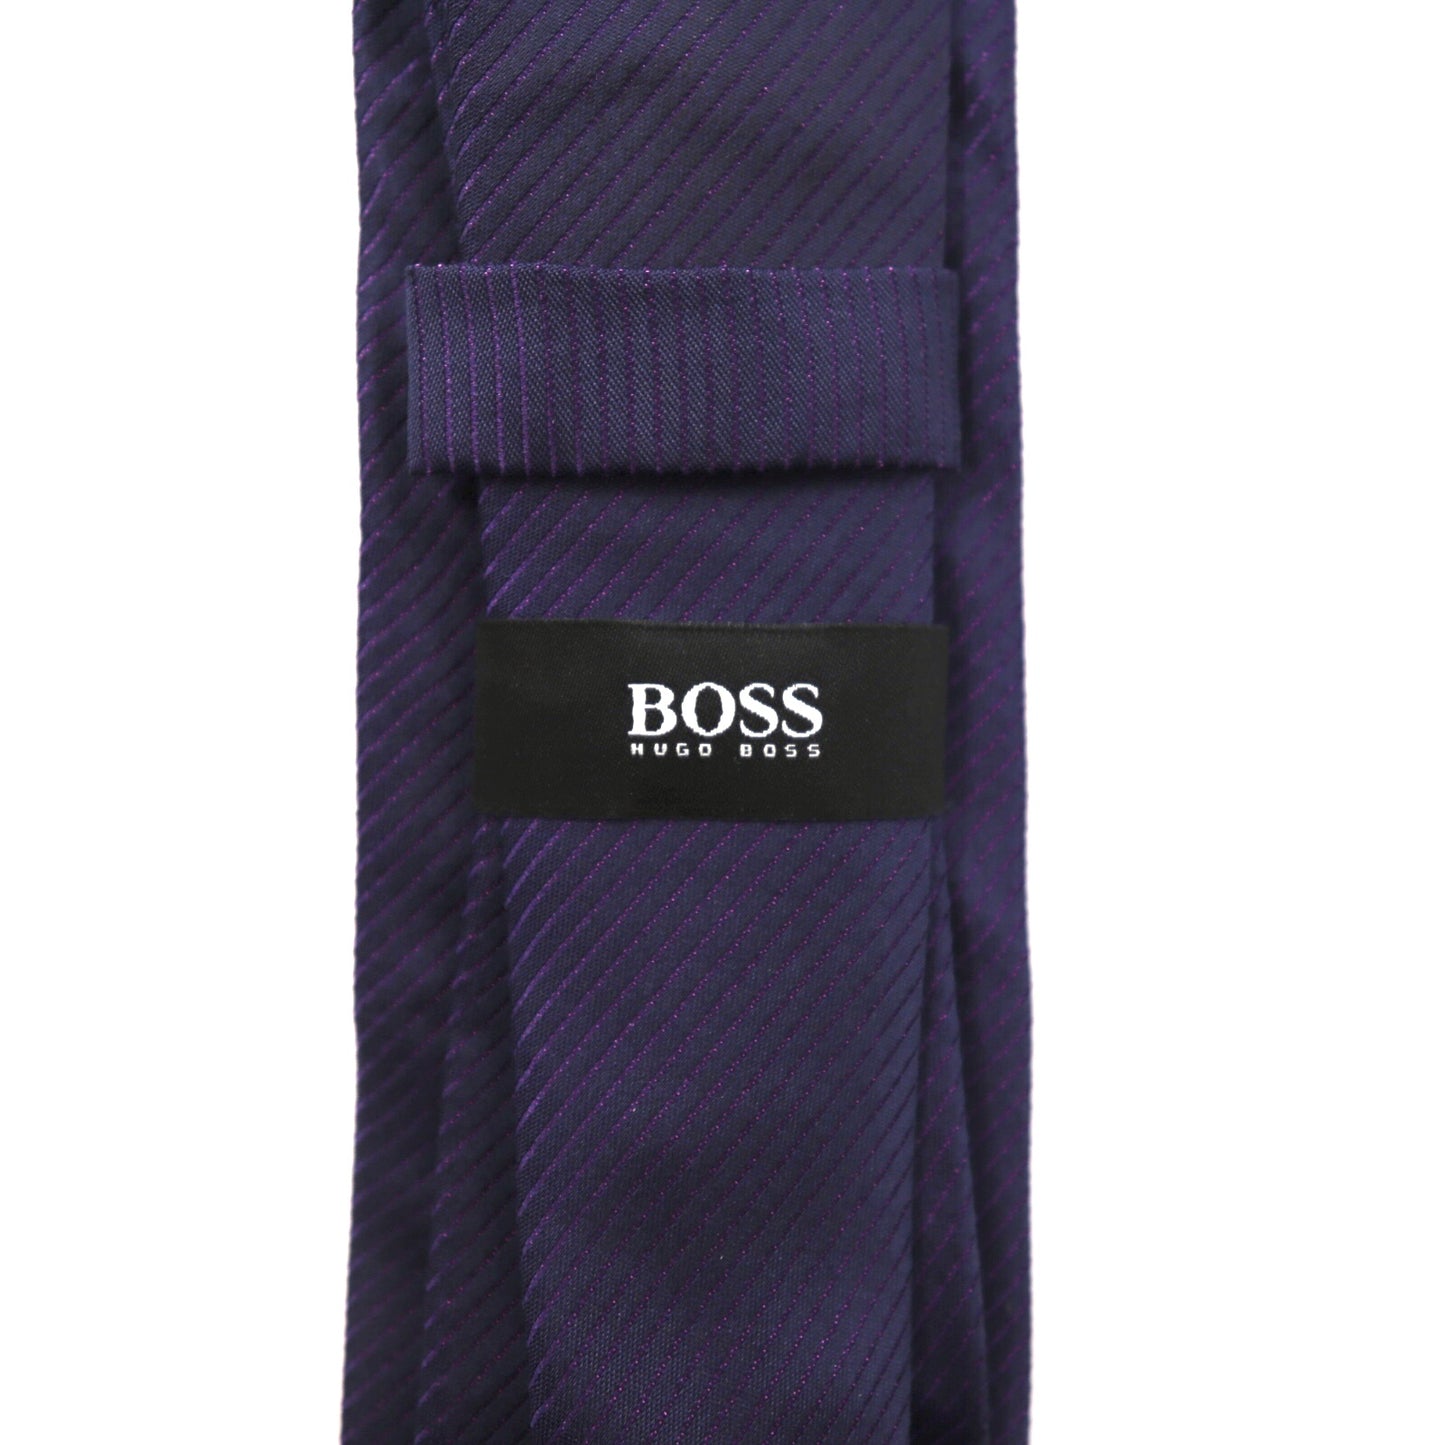 HUGO BOSS ネクタイ ネイビー シルク イタリア製